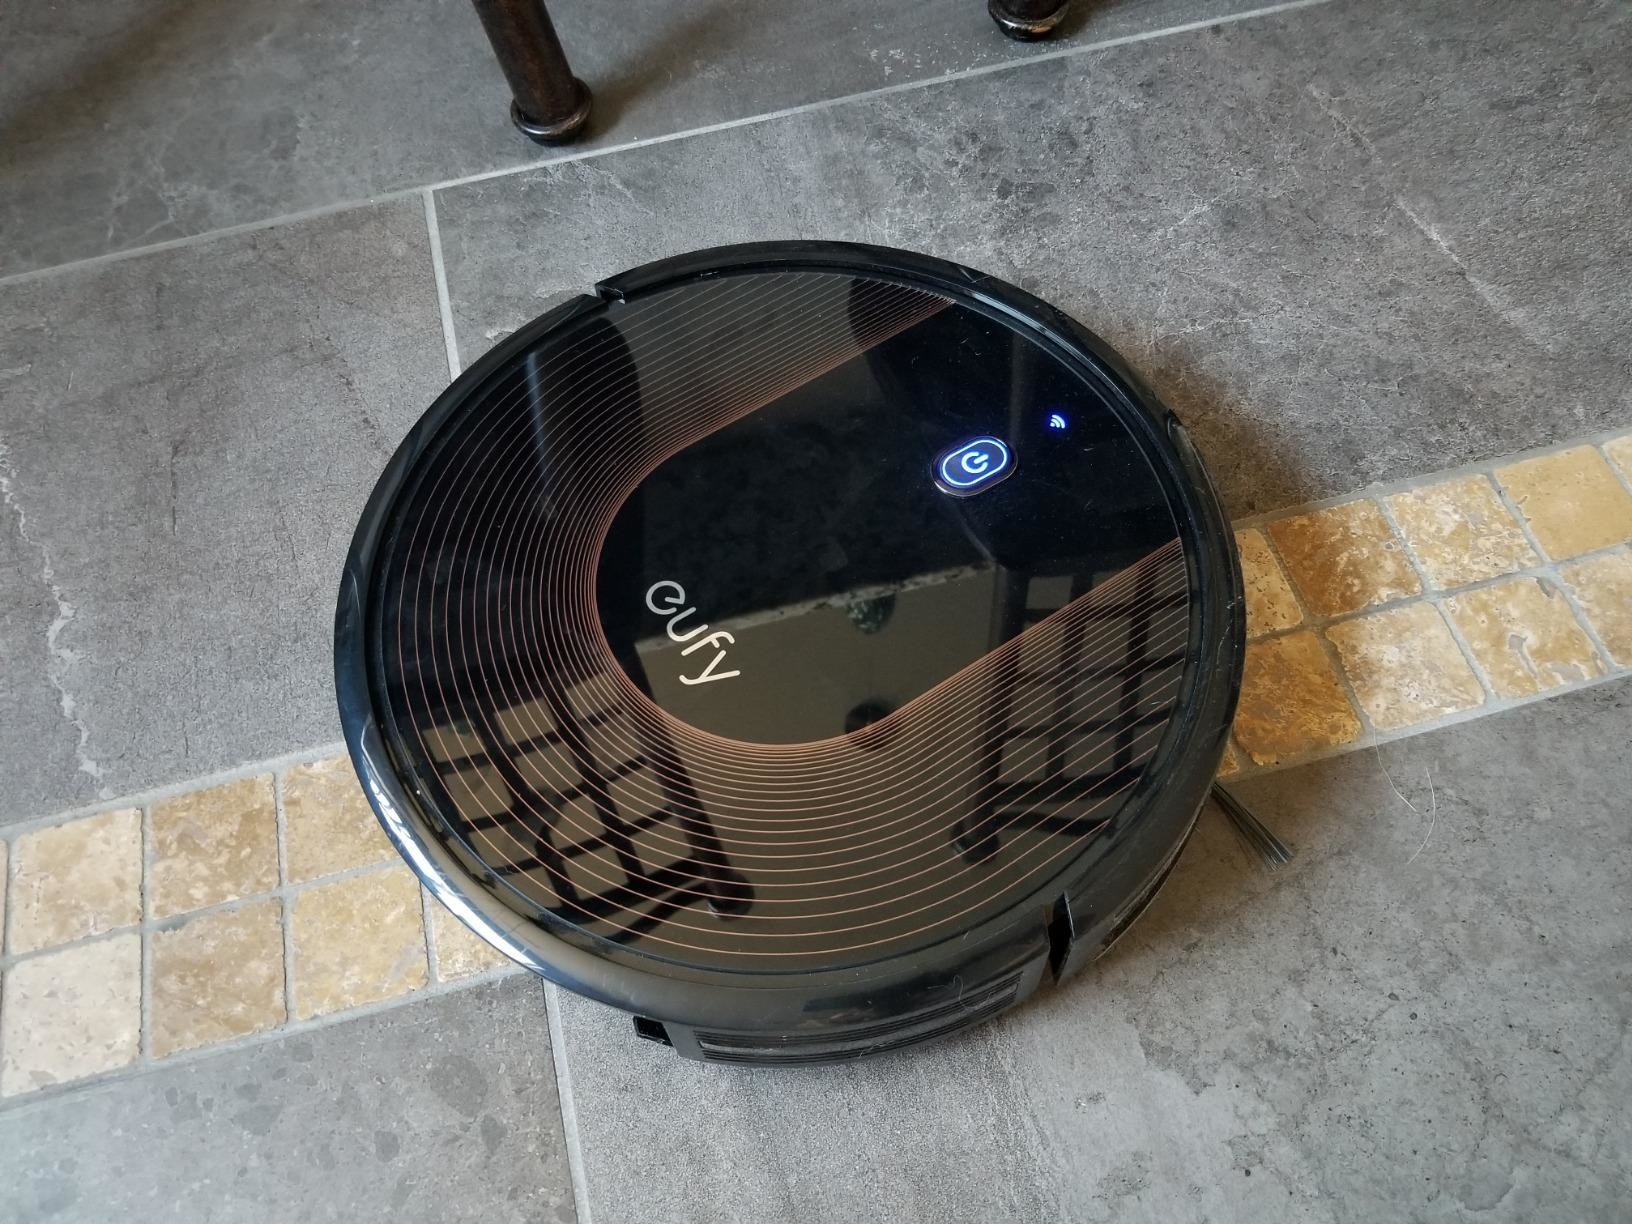 Round black robo vacuum 